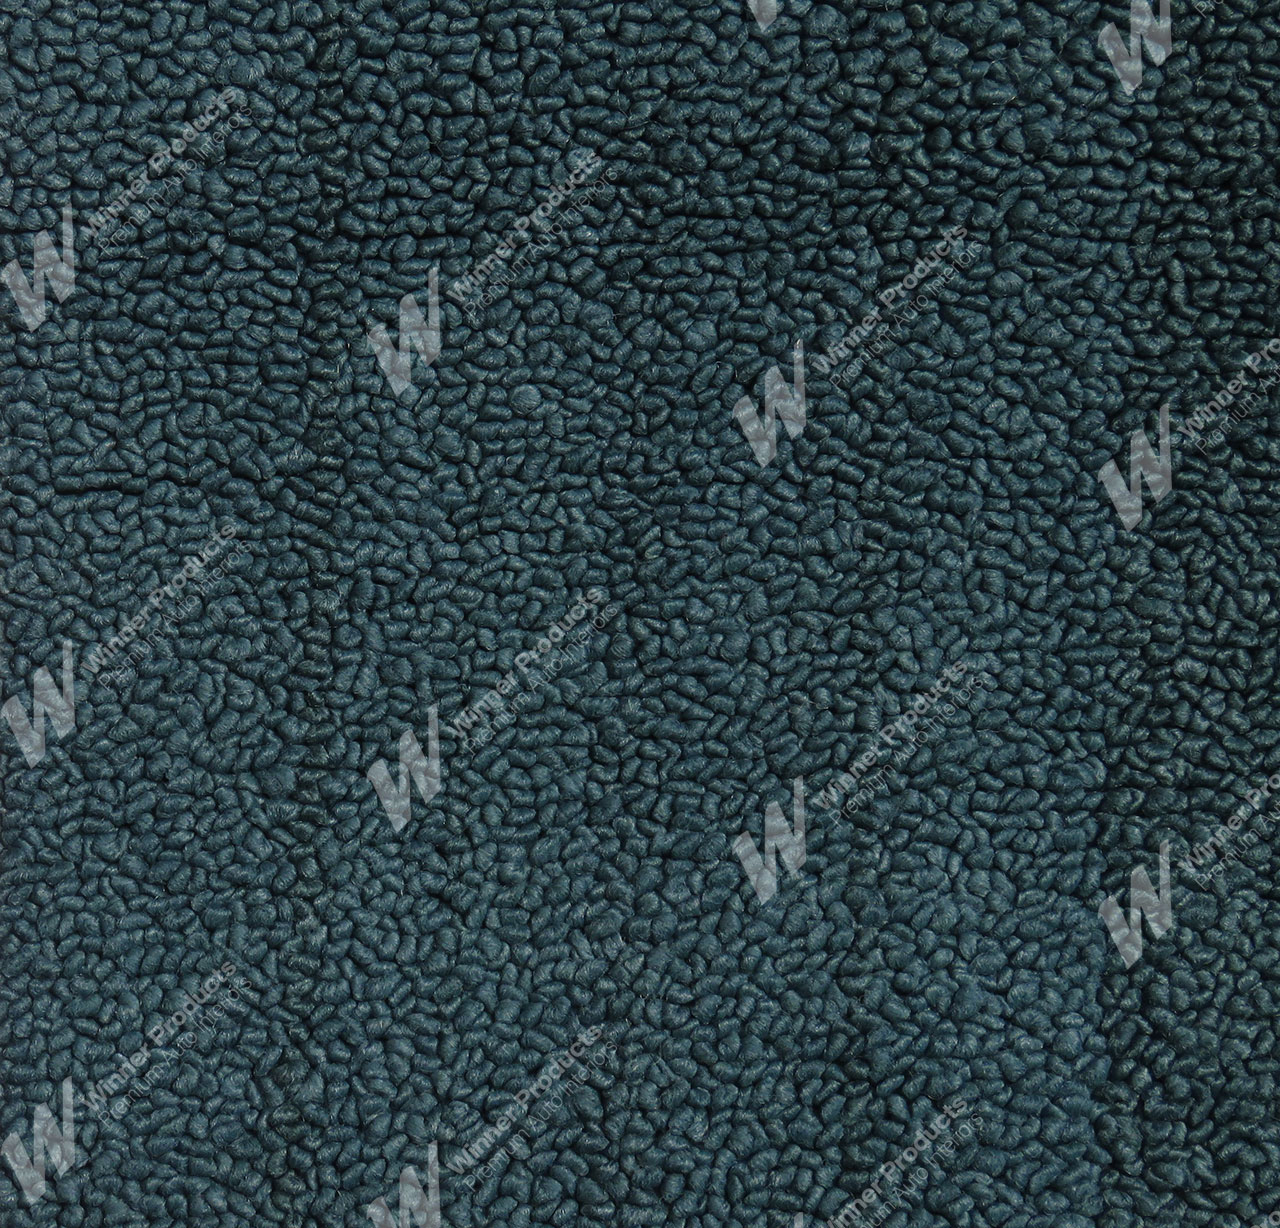 Holden Kingswood HG Kingswood Ute 13E Turquoise Mist Carpet (Image 1 of 1)